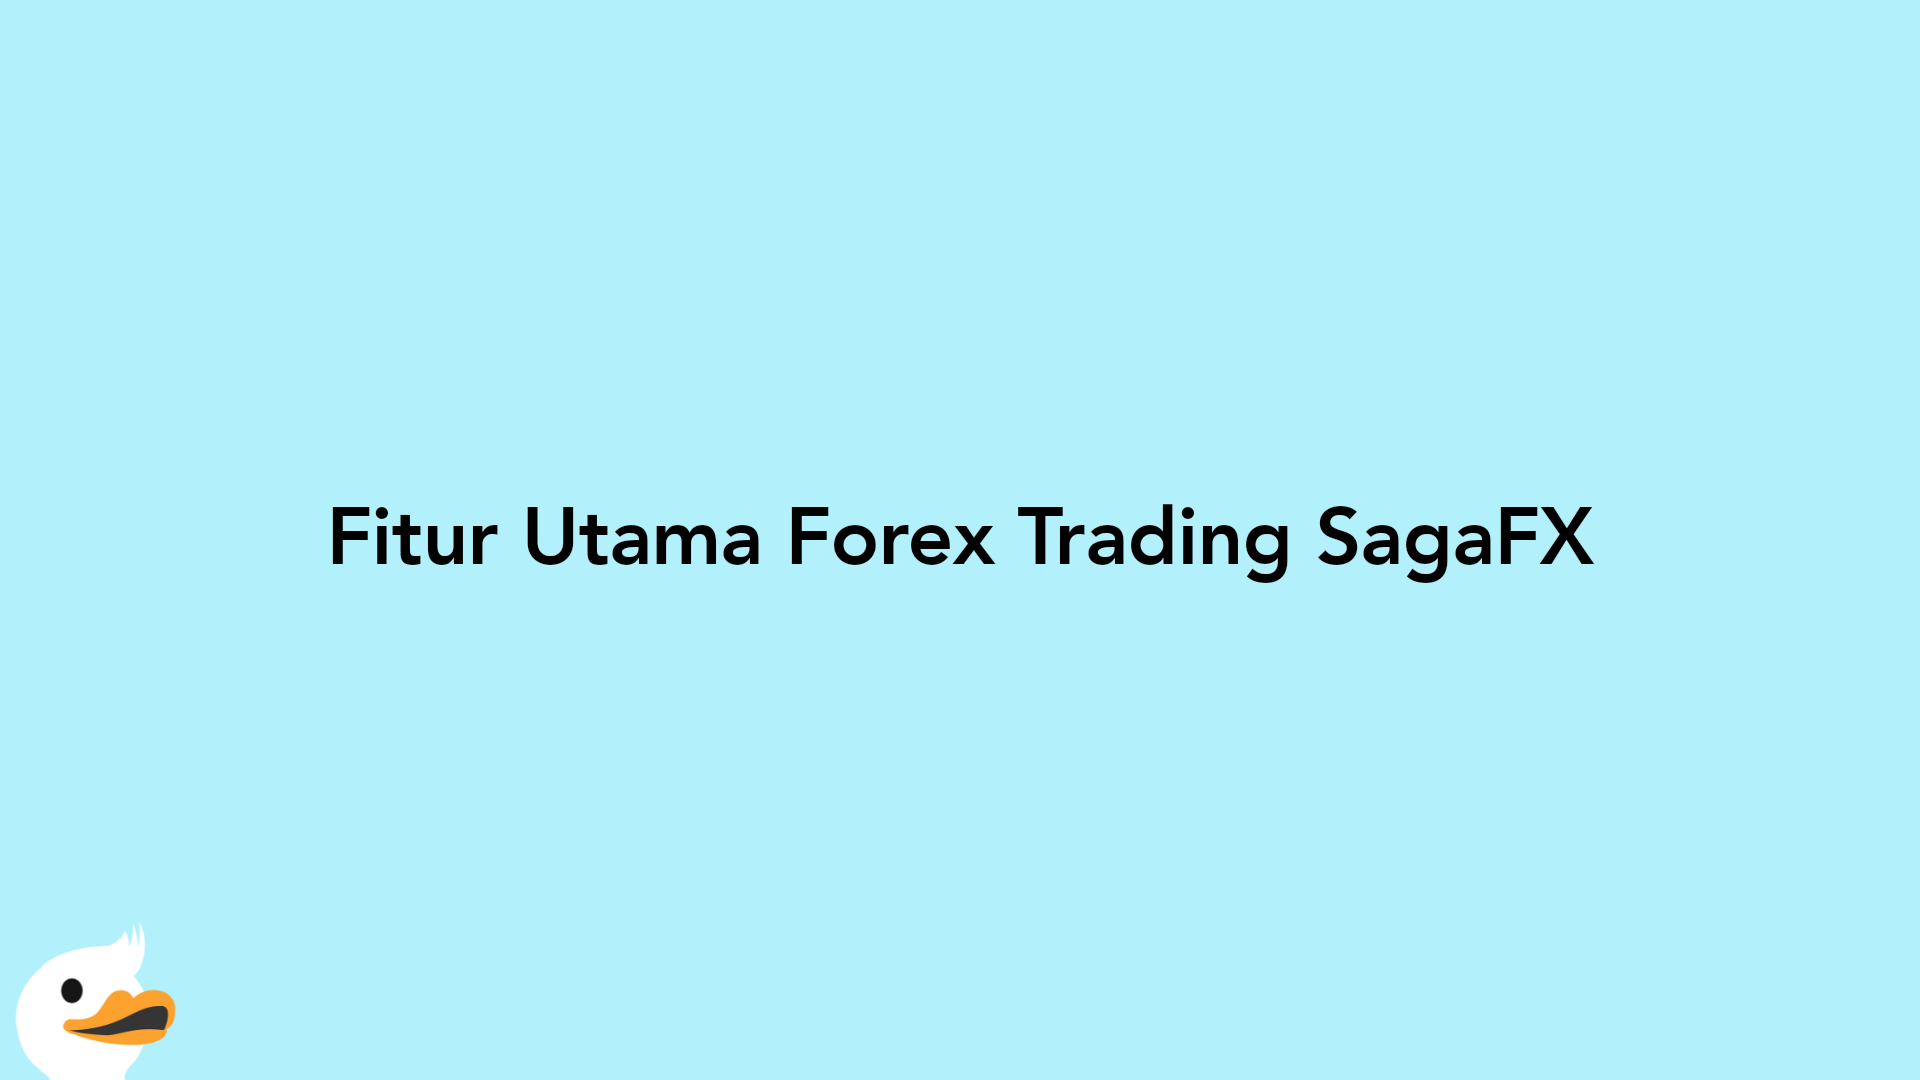 Fitur Utama Forex Trading SagaFX